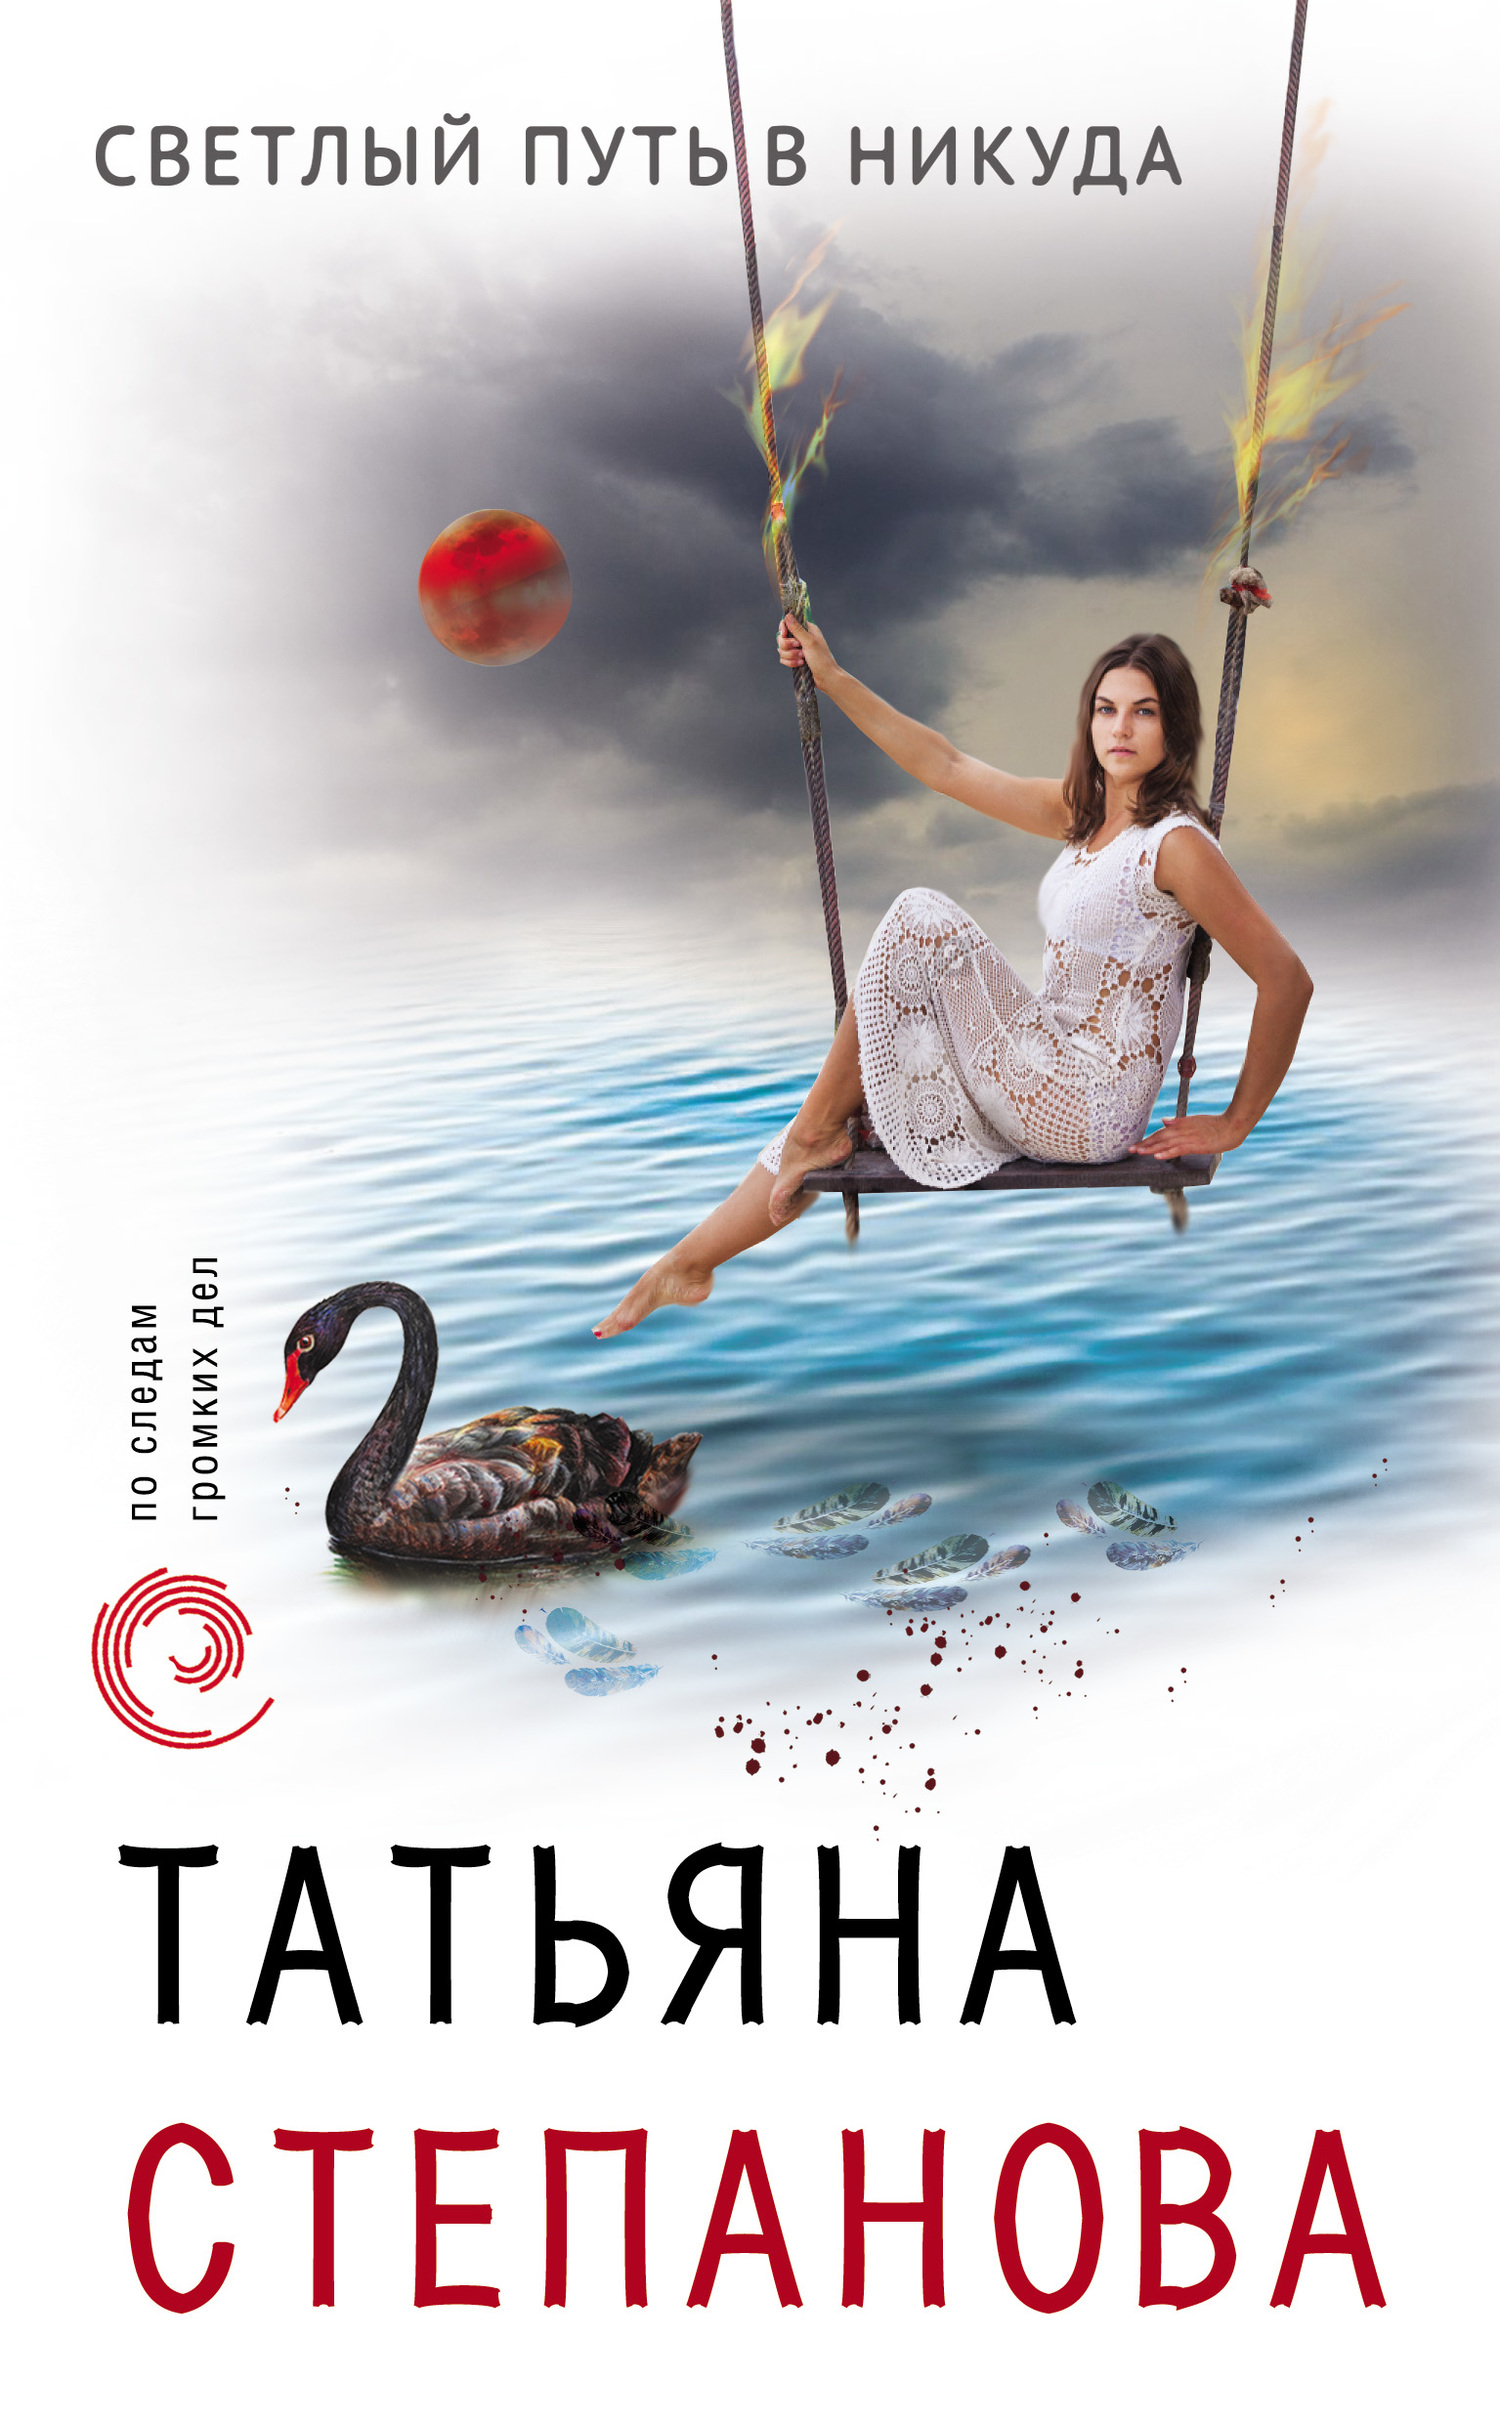 Степанова Татьяна - Светлый путь в никуда скачать бесплатно